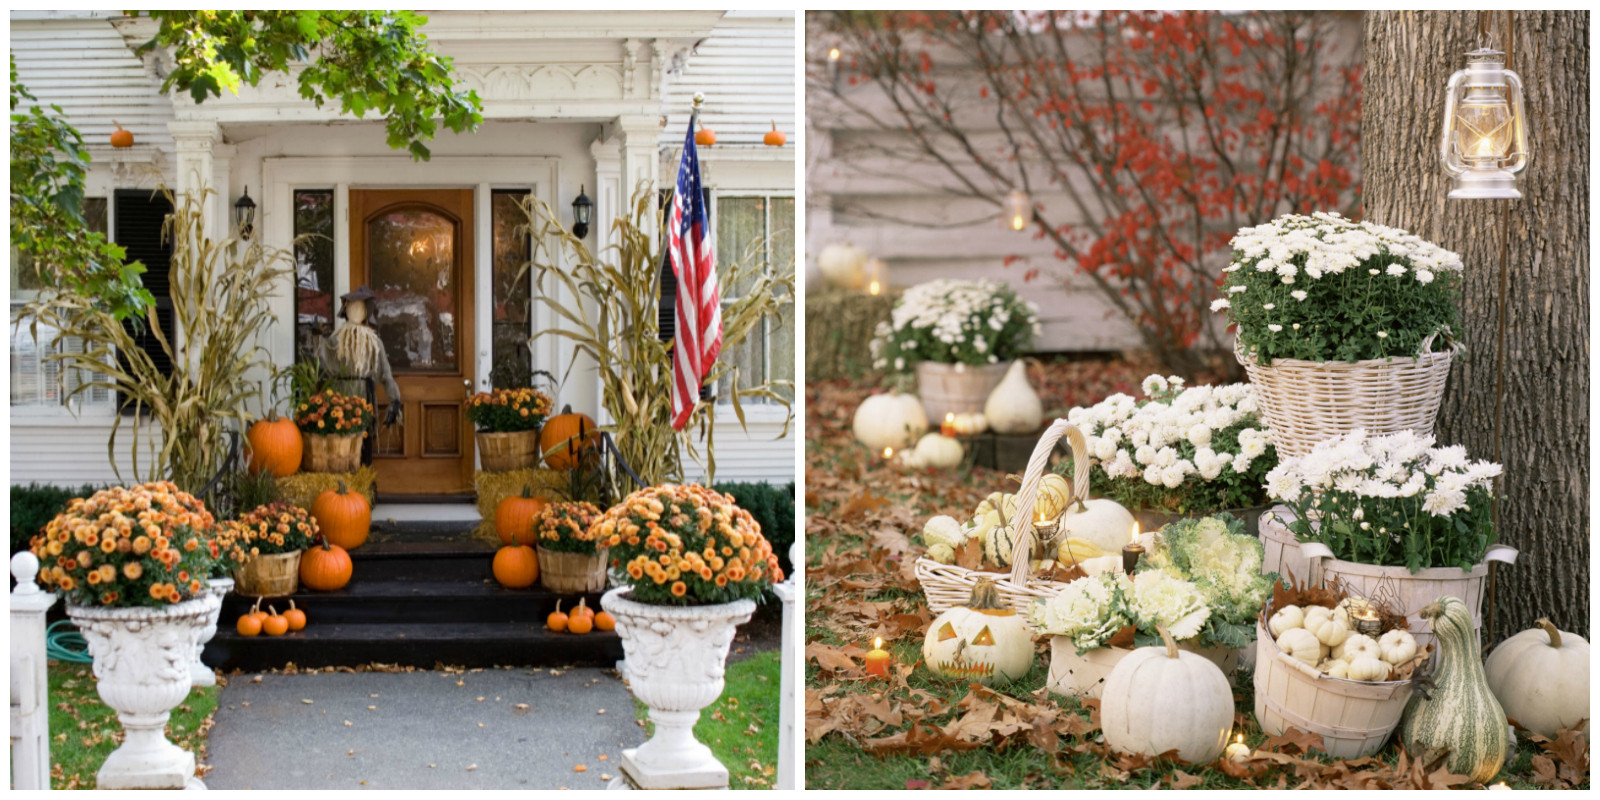 Best Outdoor Halloween Decorations
 25 Outdoor Halloween Decorations Porch Decorating Ideas